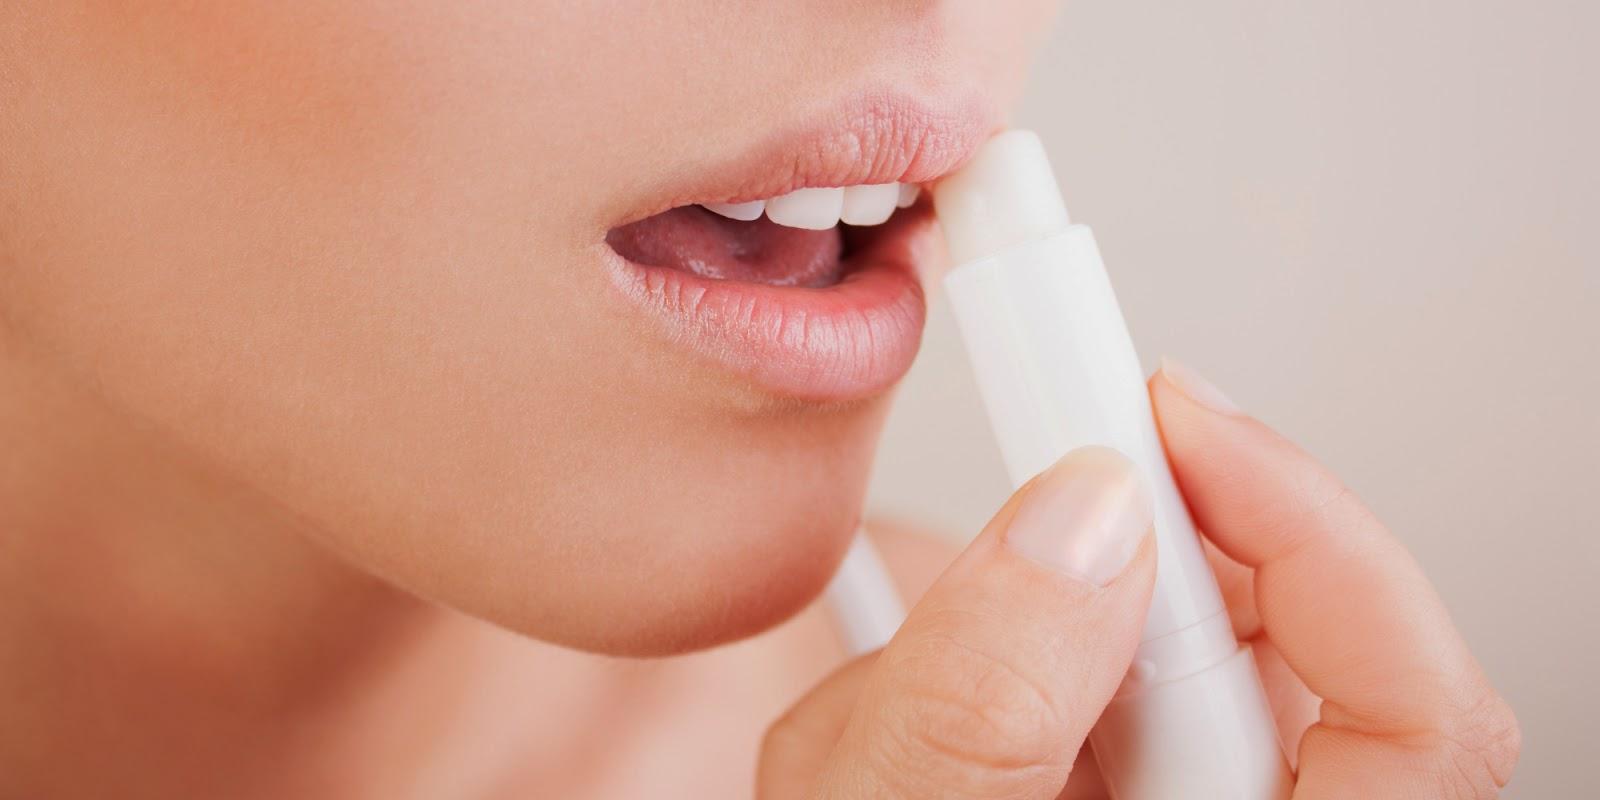 Les baumes et sticks à lèvre hydratant assèchent les lèvres, c'est plutôt embêtant non ?